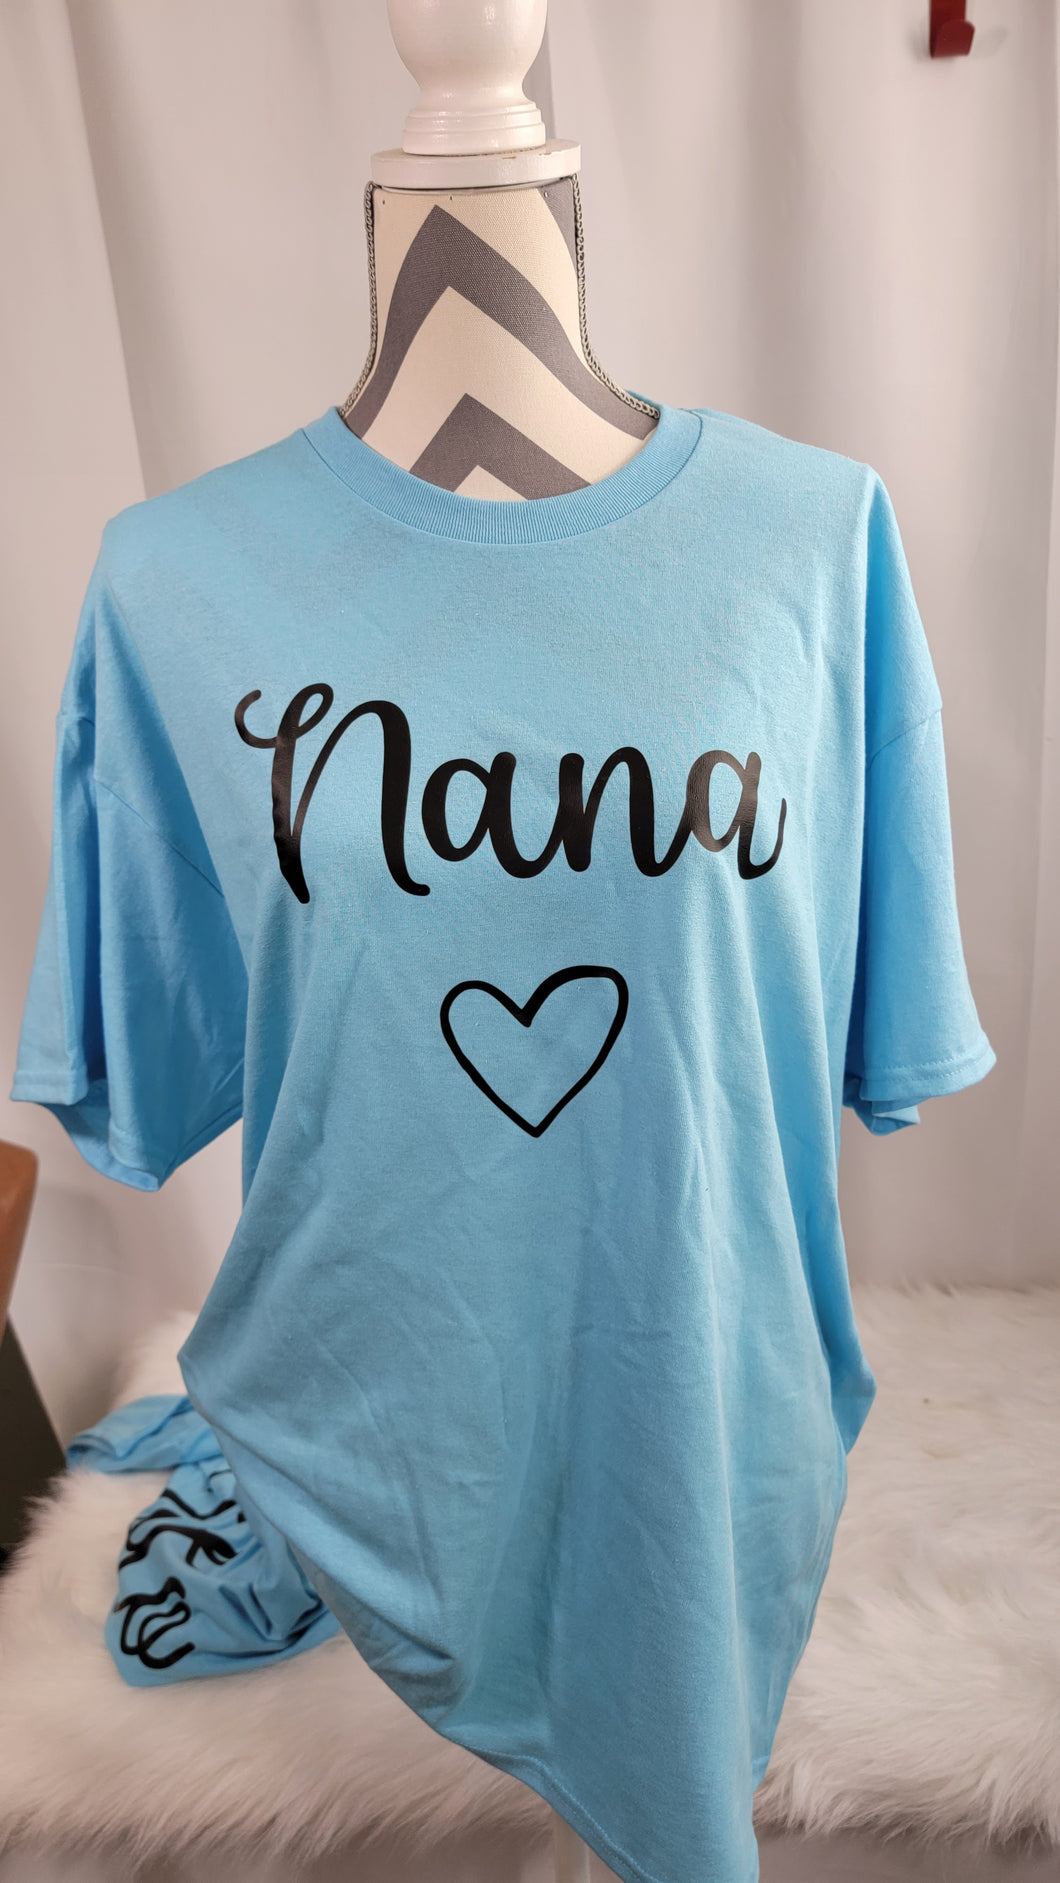 Nana and Toto shirts